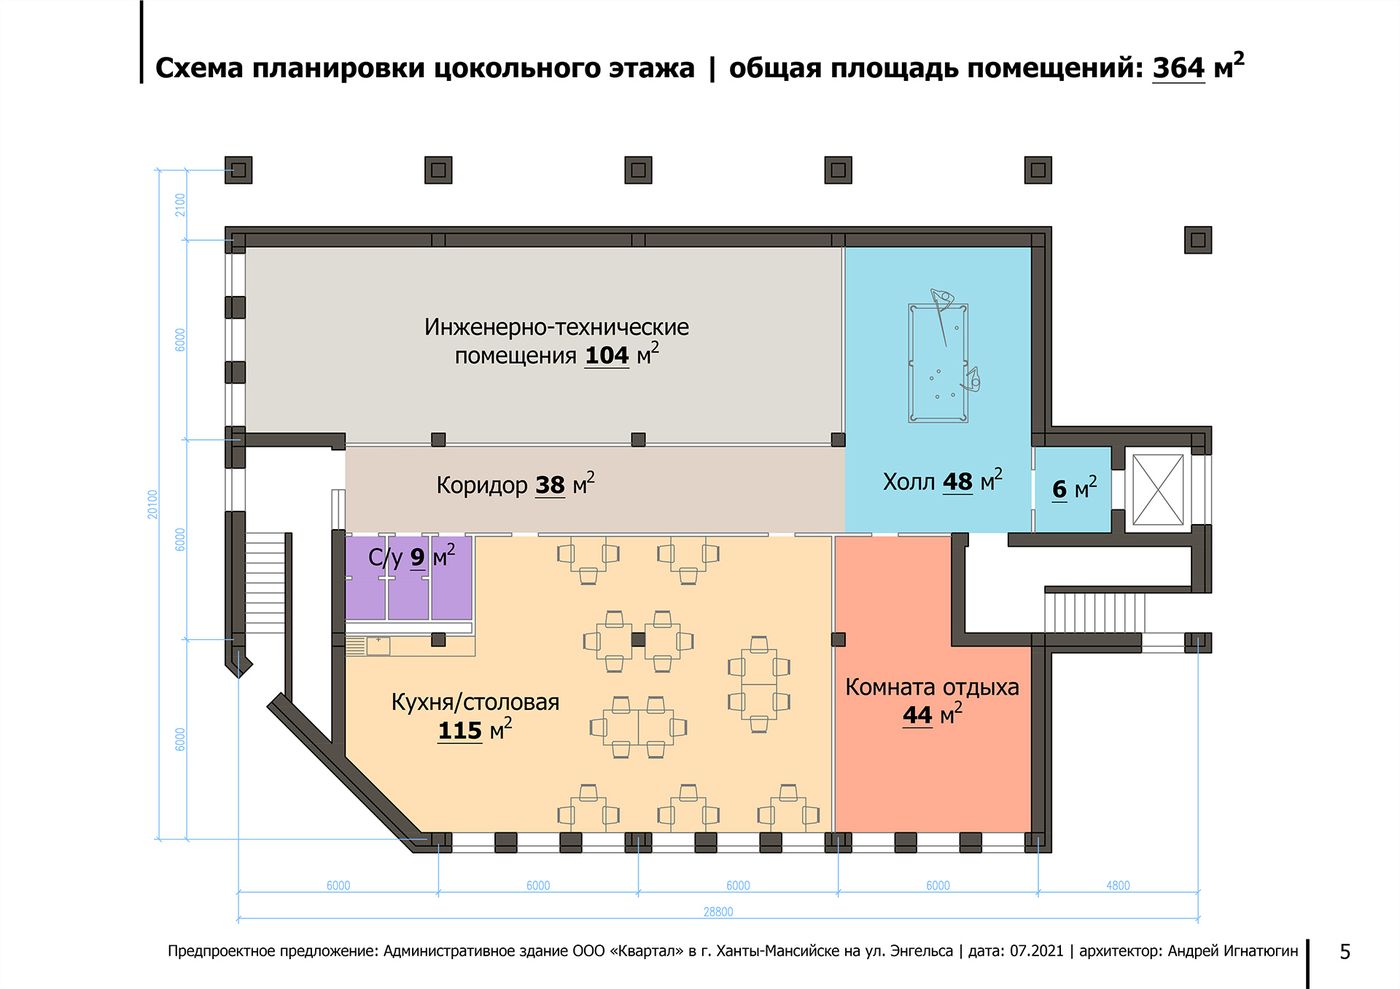 Схема планировки цокольного этажа